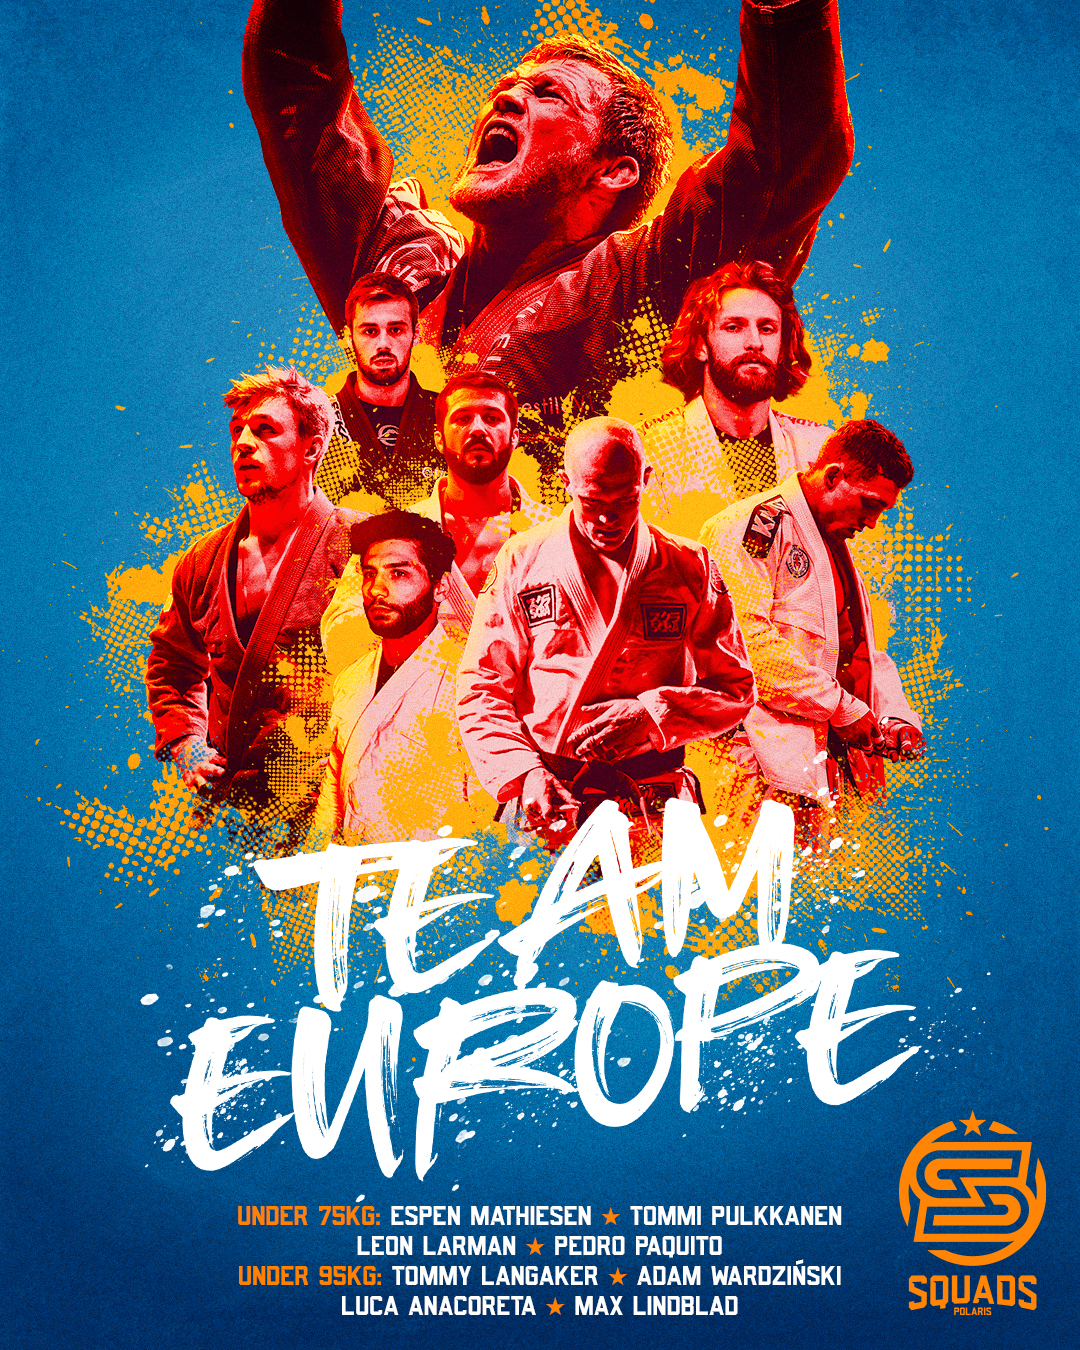 Polaris Squads 2 - Team Europe